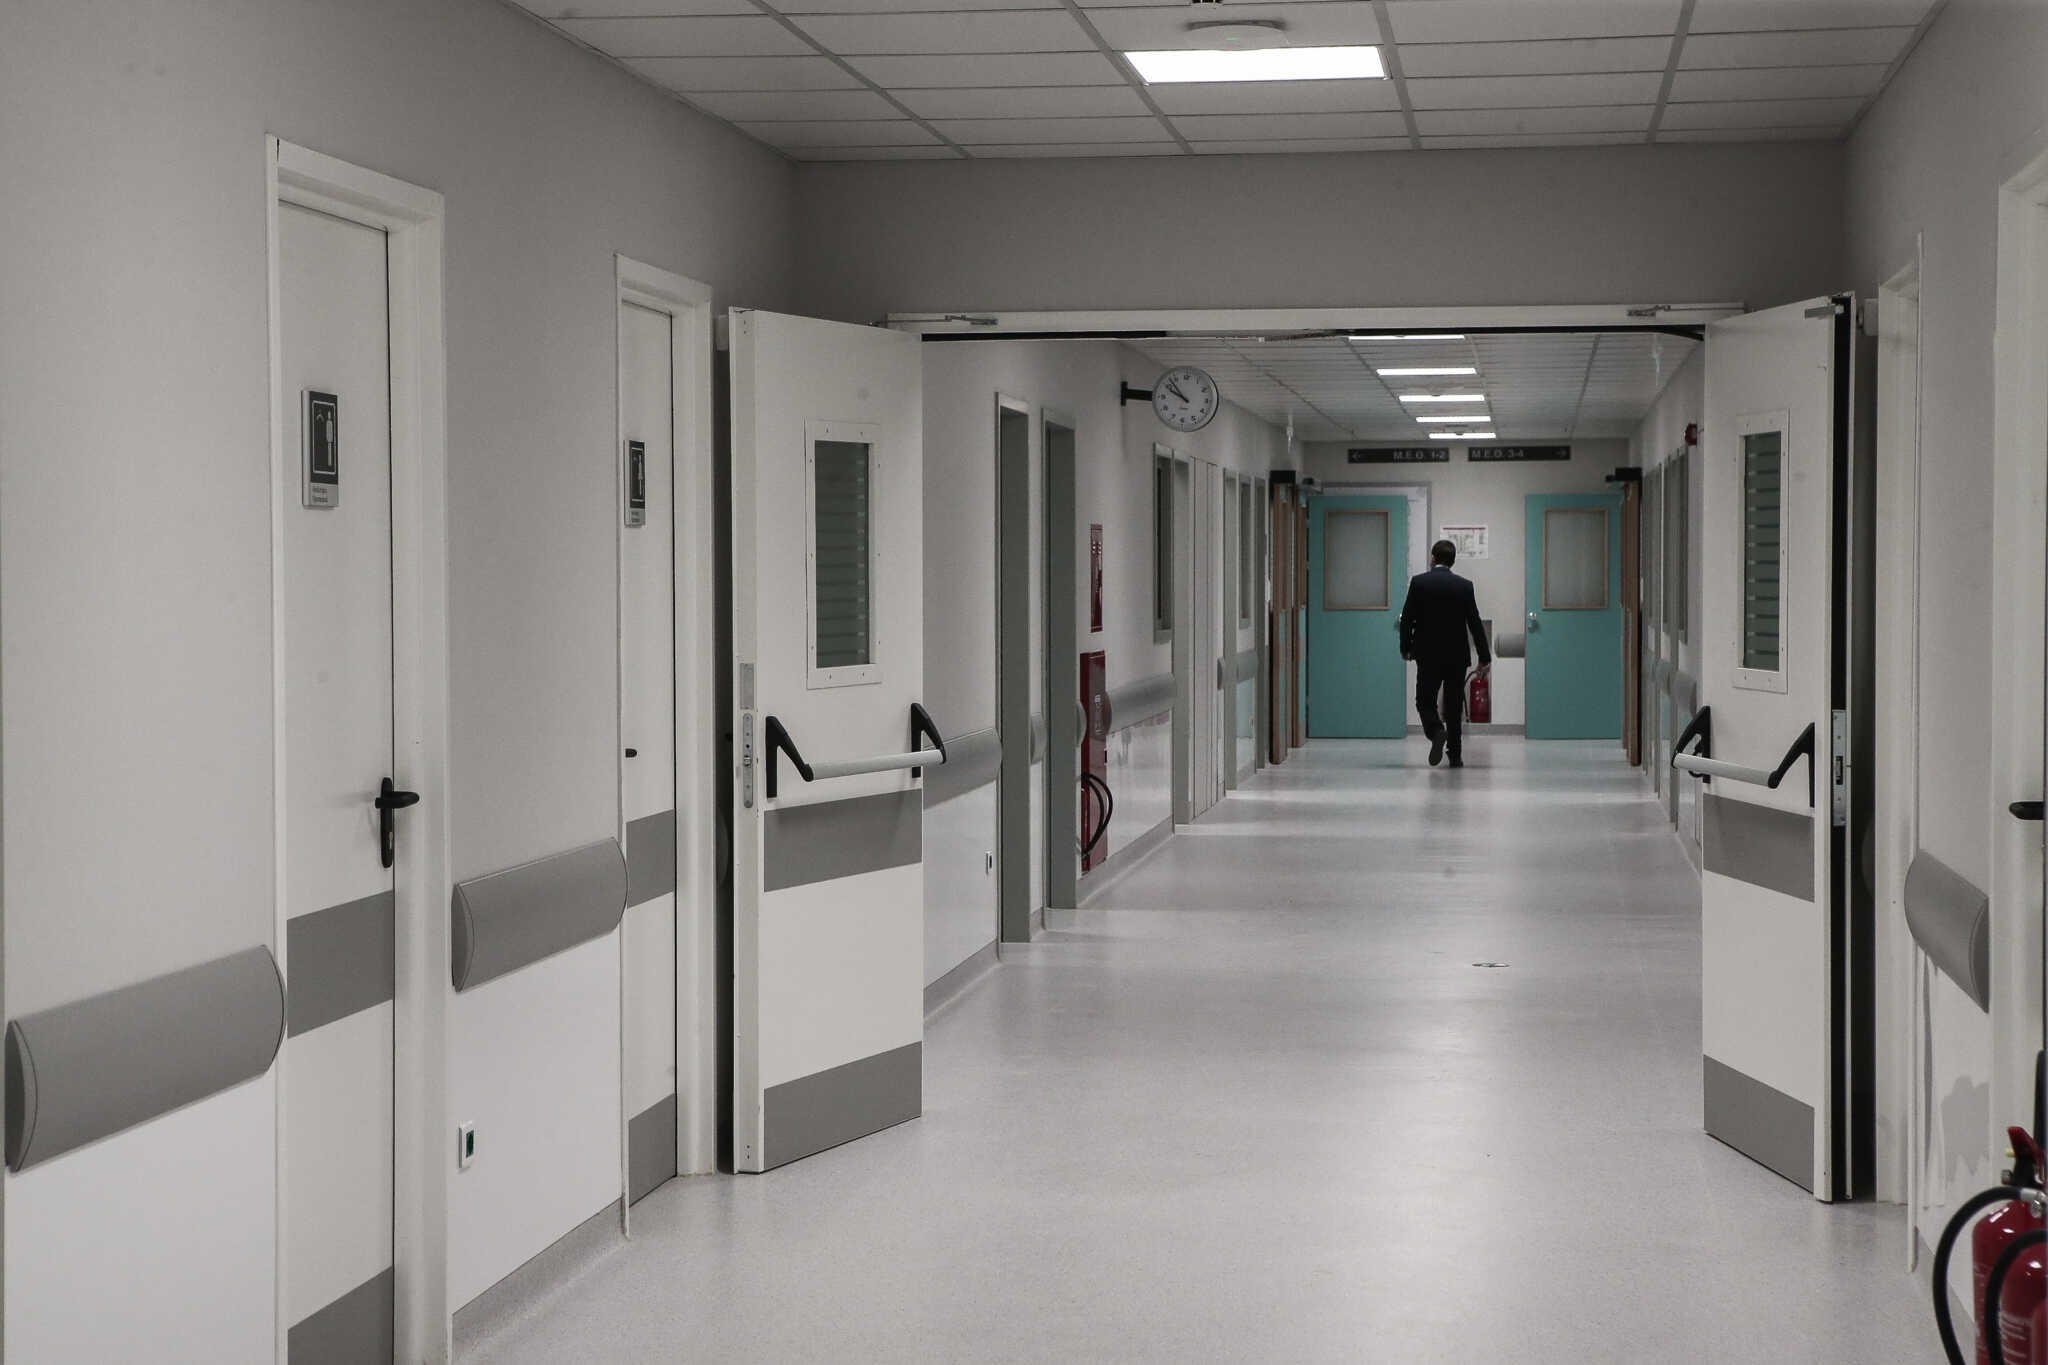 Το Πανεπιστημιακό Νοσοκομείο Λάρισας οδηγεί την κούρσα των απογευματινών χειρουργείων: 20 επεμβάσεις σε λίγες μέρες